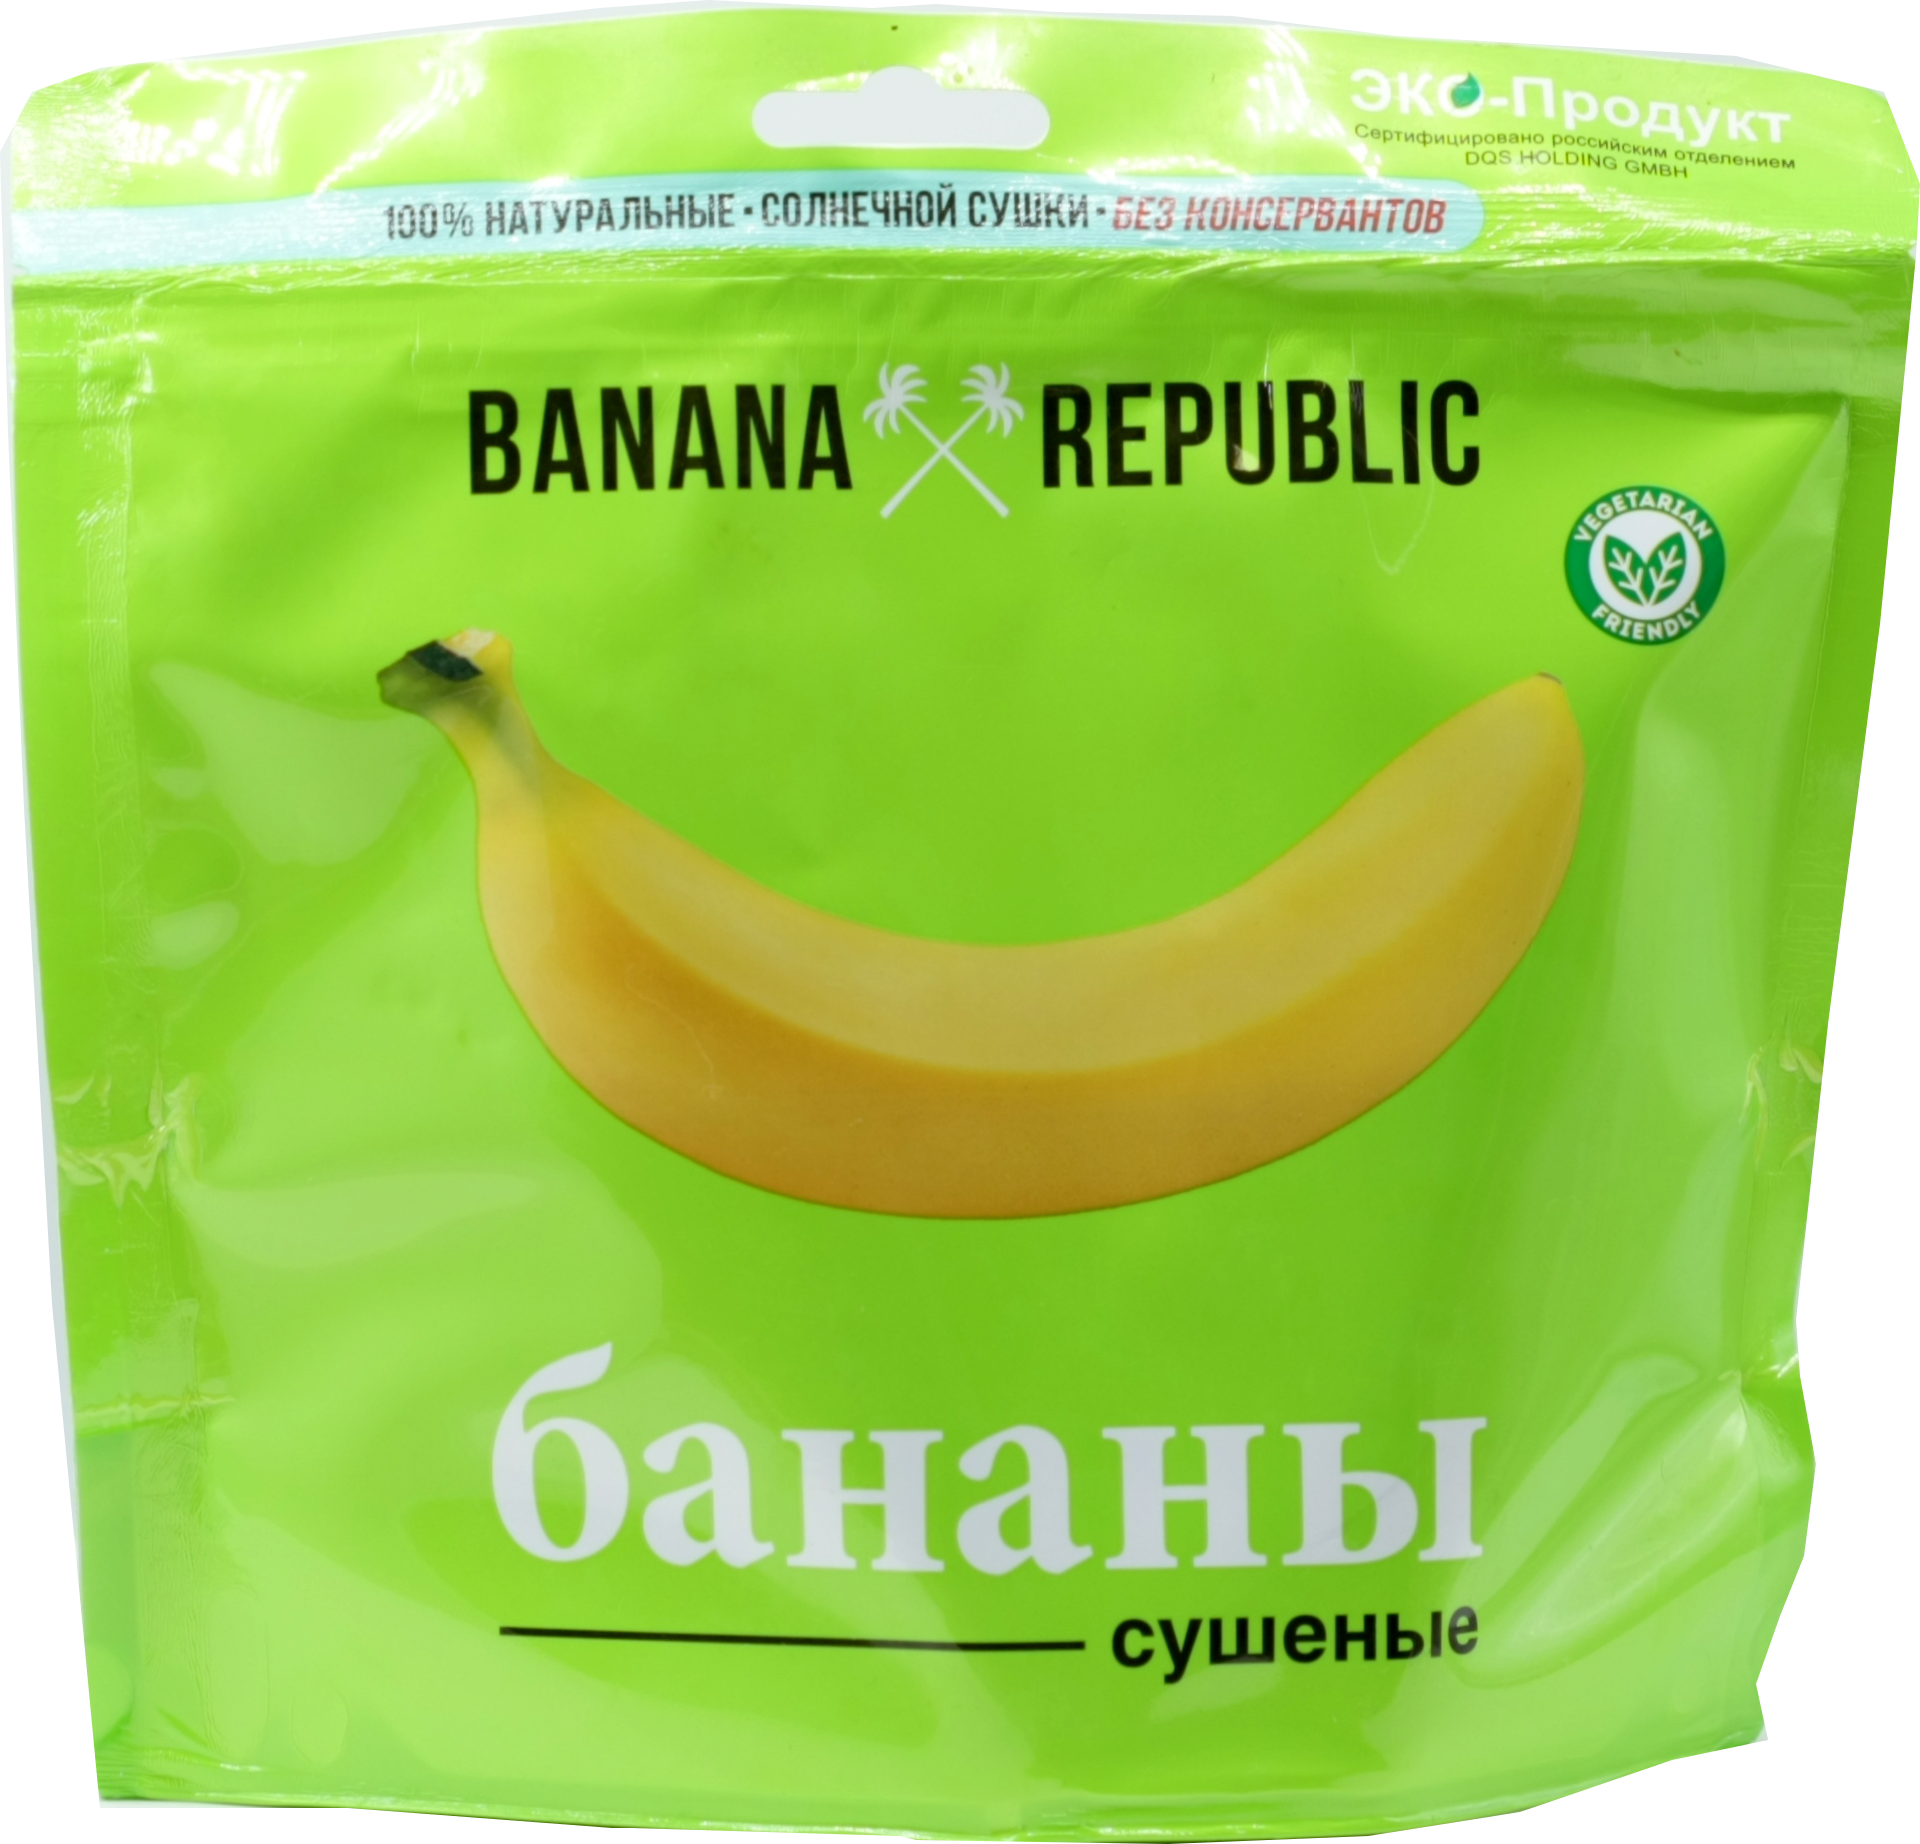 Сухофрукты банан. Бананы сушеные 200гр. Сухие бананы. Banana Republic сушеные бананы. Сушеные бананы в упаковке.